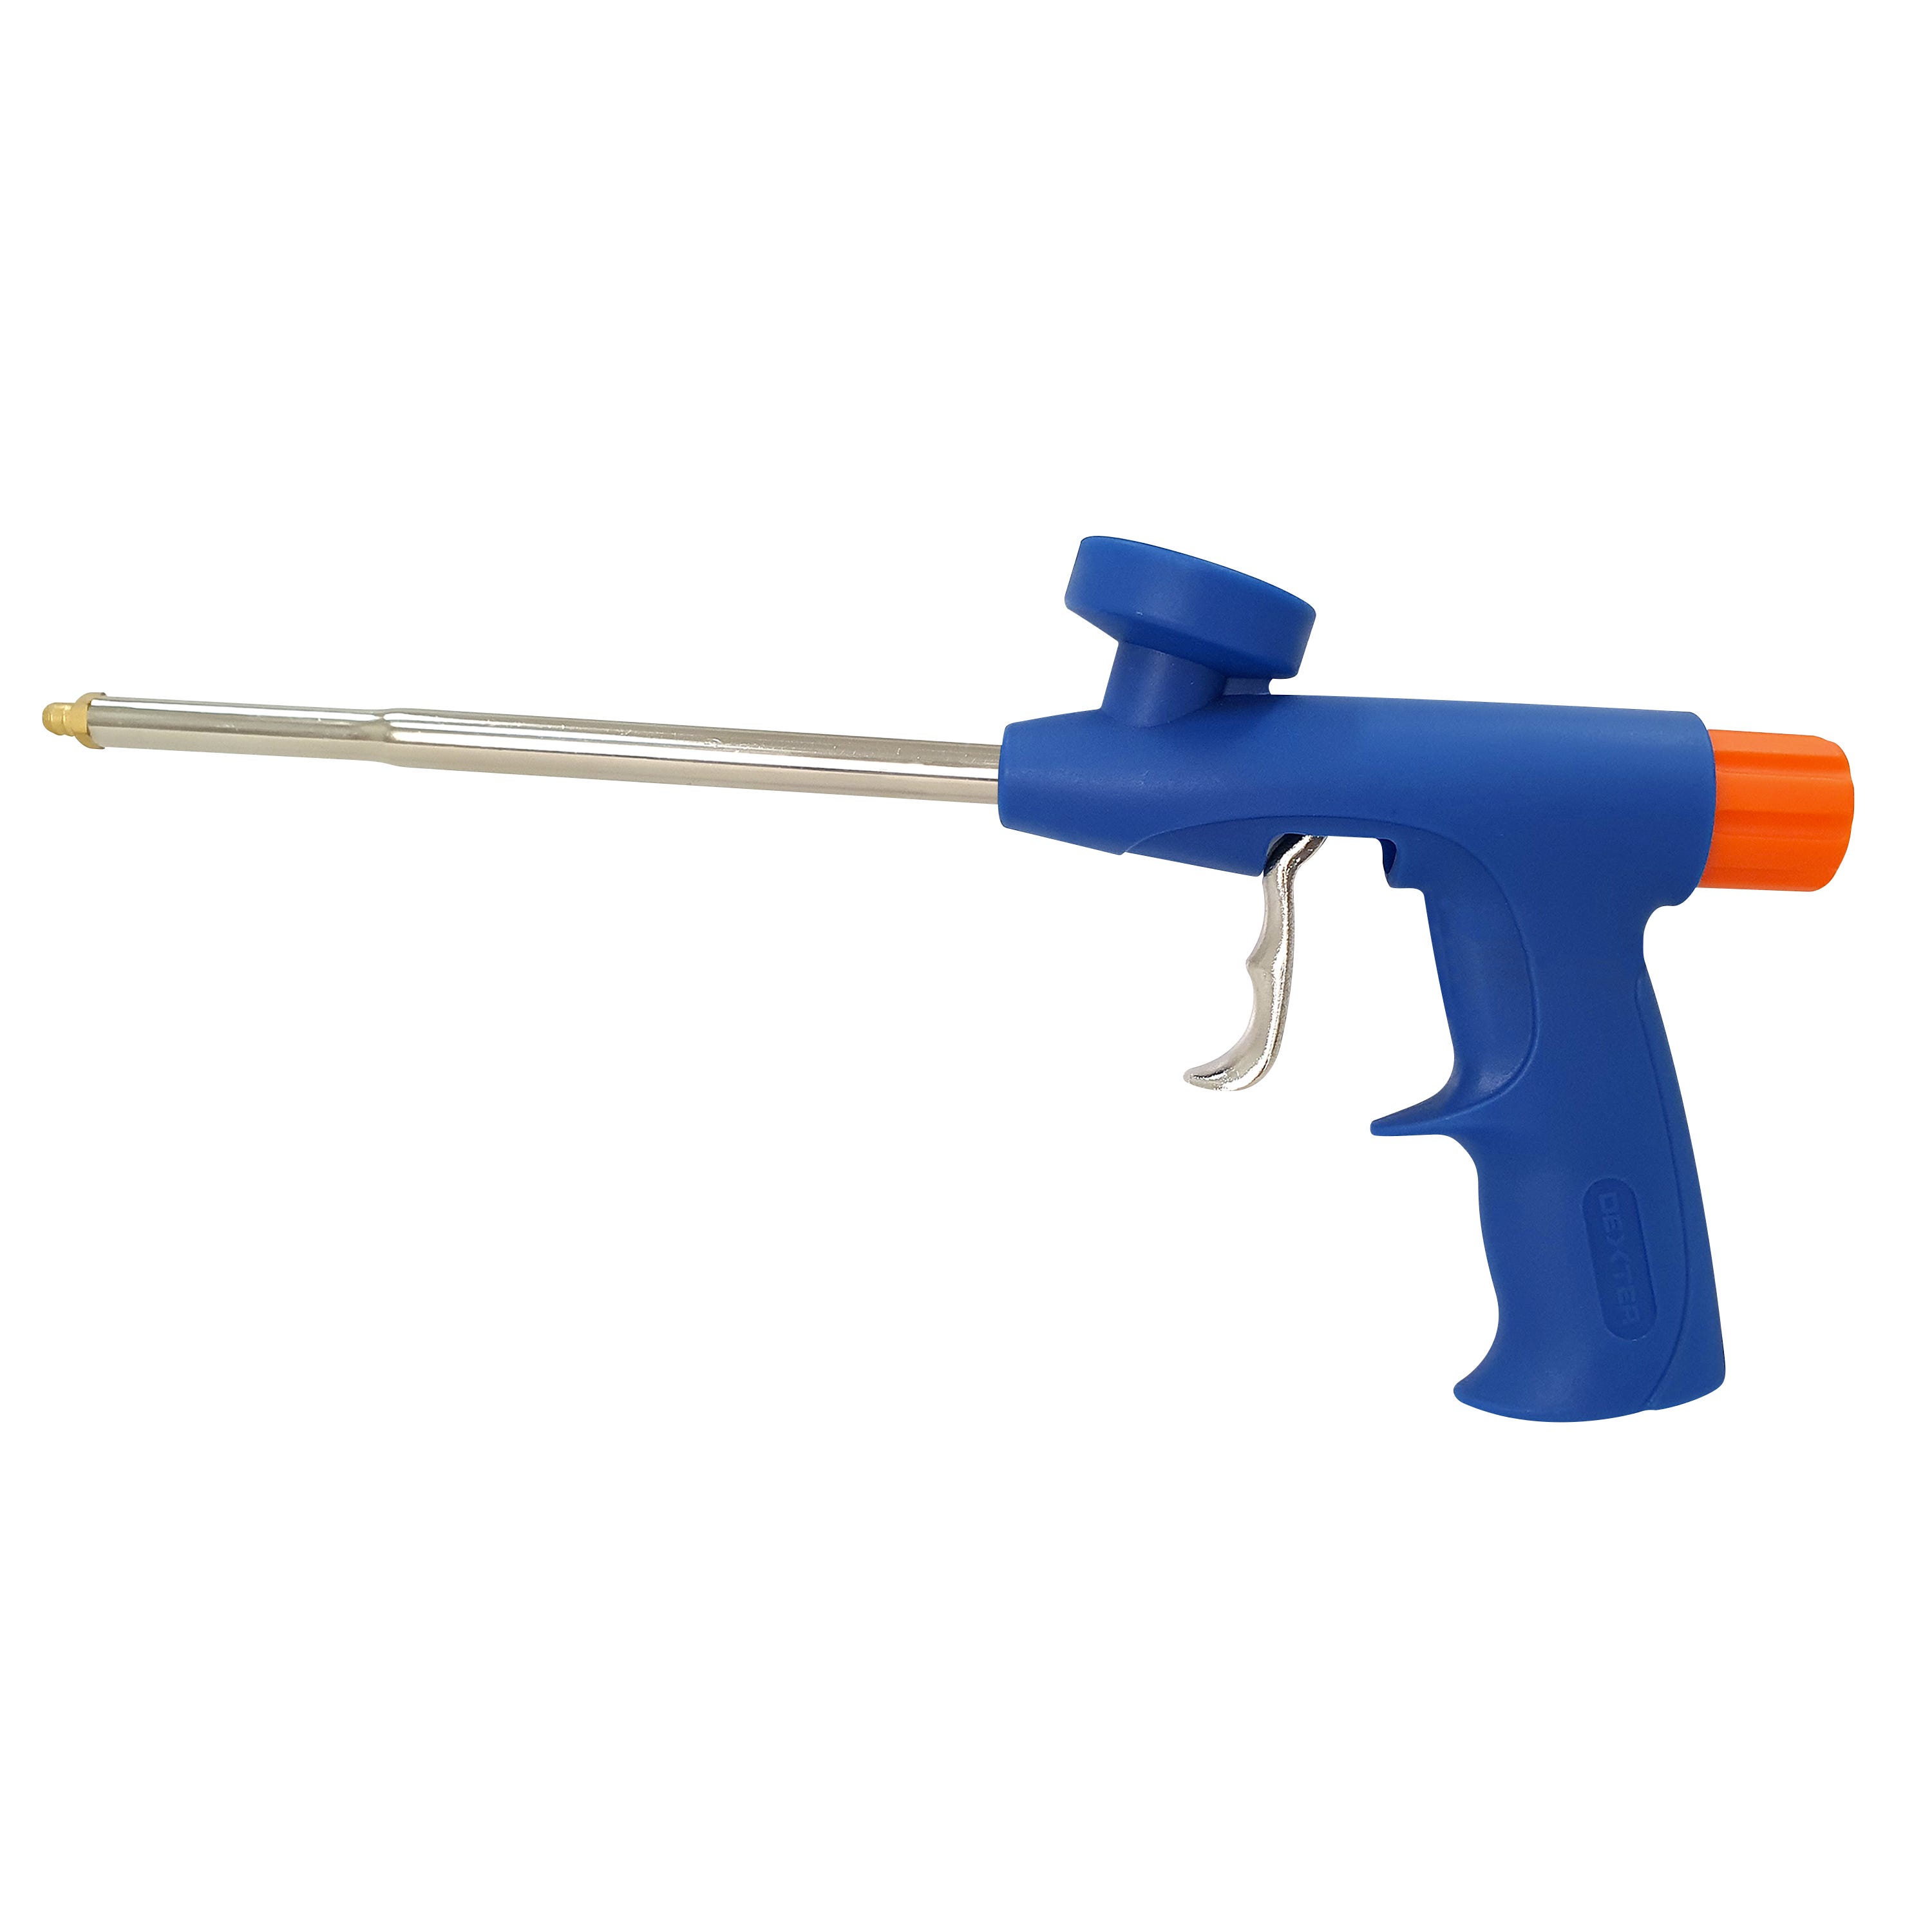 Schiuma poliuretanica Professionale per Pistola Soudal per coppi e tegole  vendita, prezzo